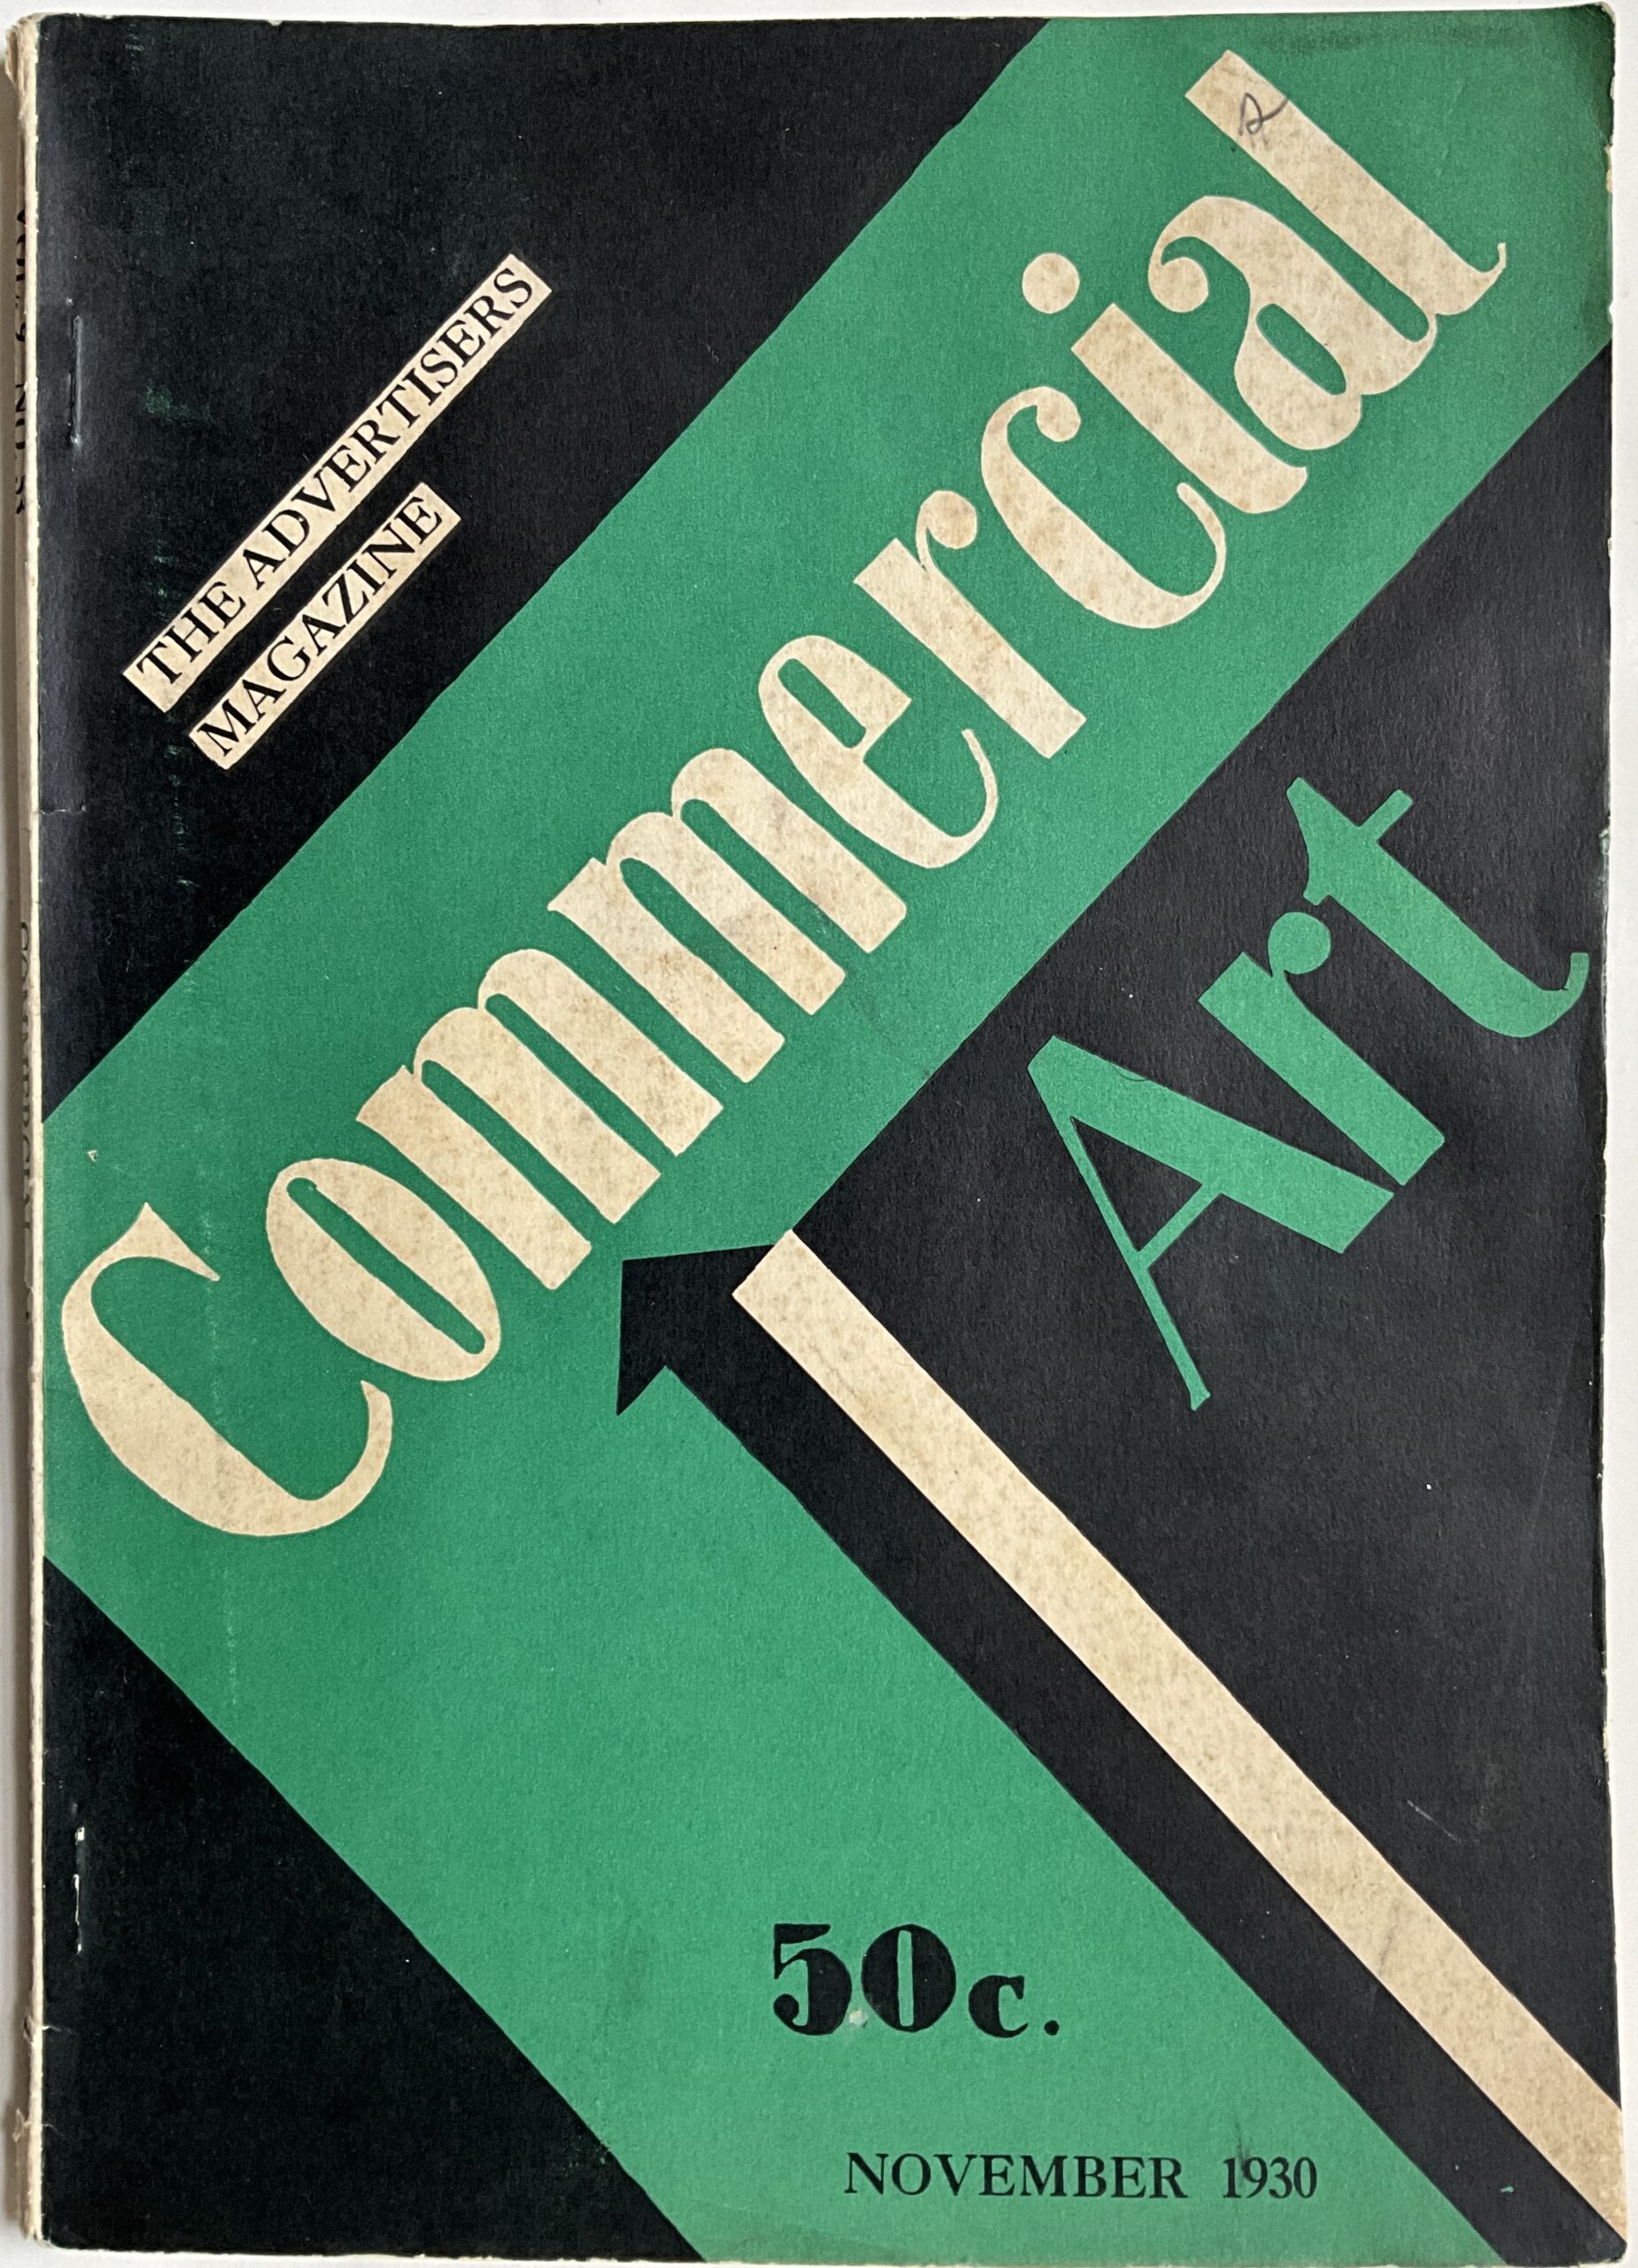 ST62	COMMERCIAL ART ADVERTISER’S MAGAZINE - NOVEMBER 1930